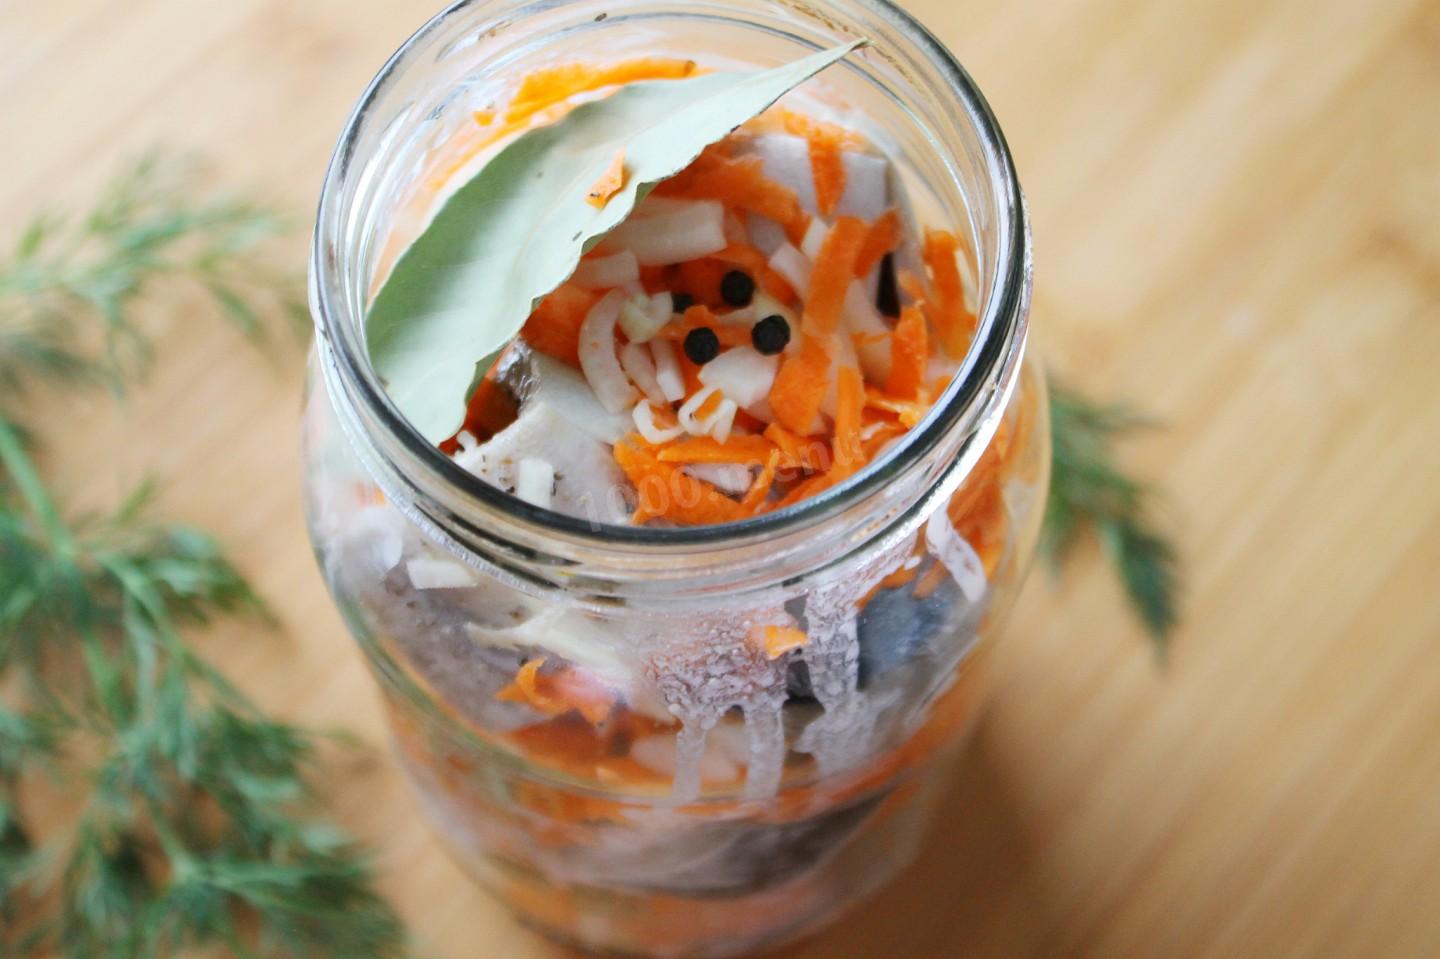 Скумбрия в духовке в банке с луком и морковкой рецепт с фото пошагово